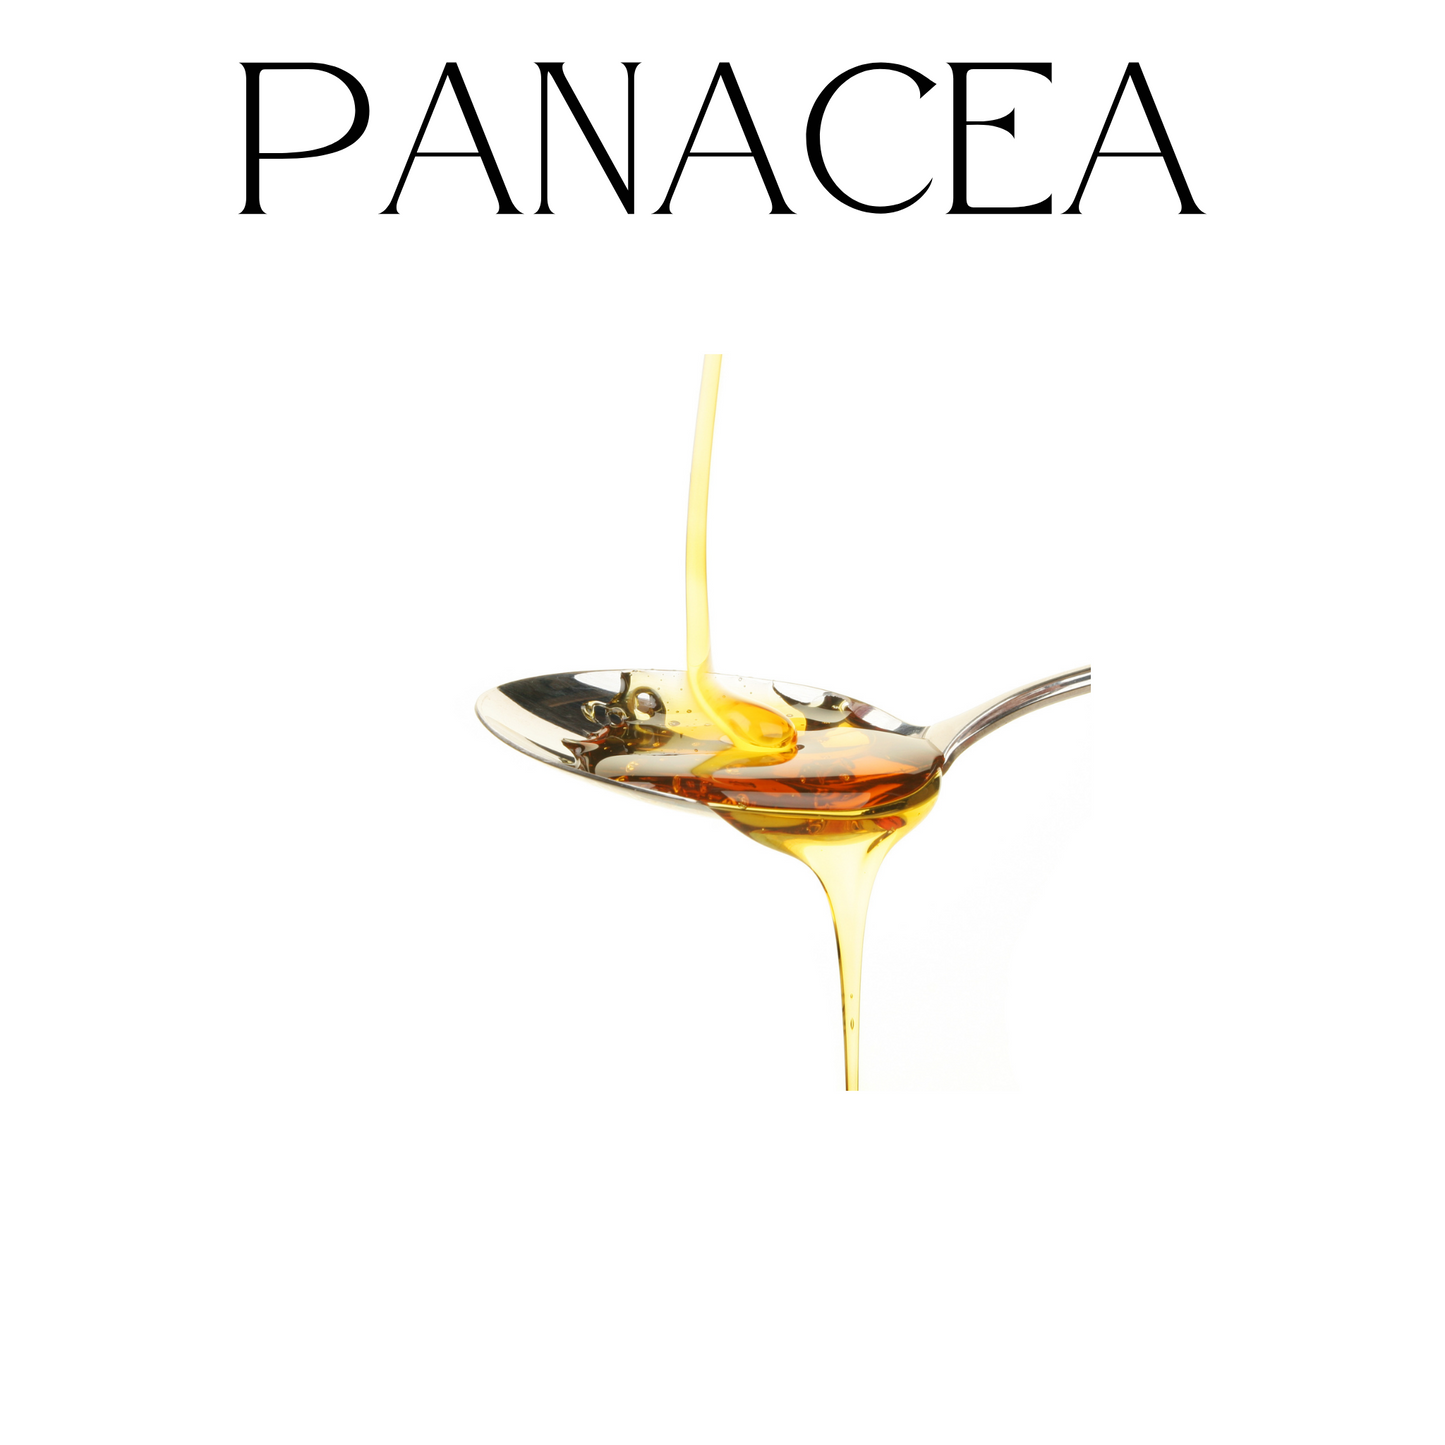 Panacea Skin Oil